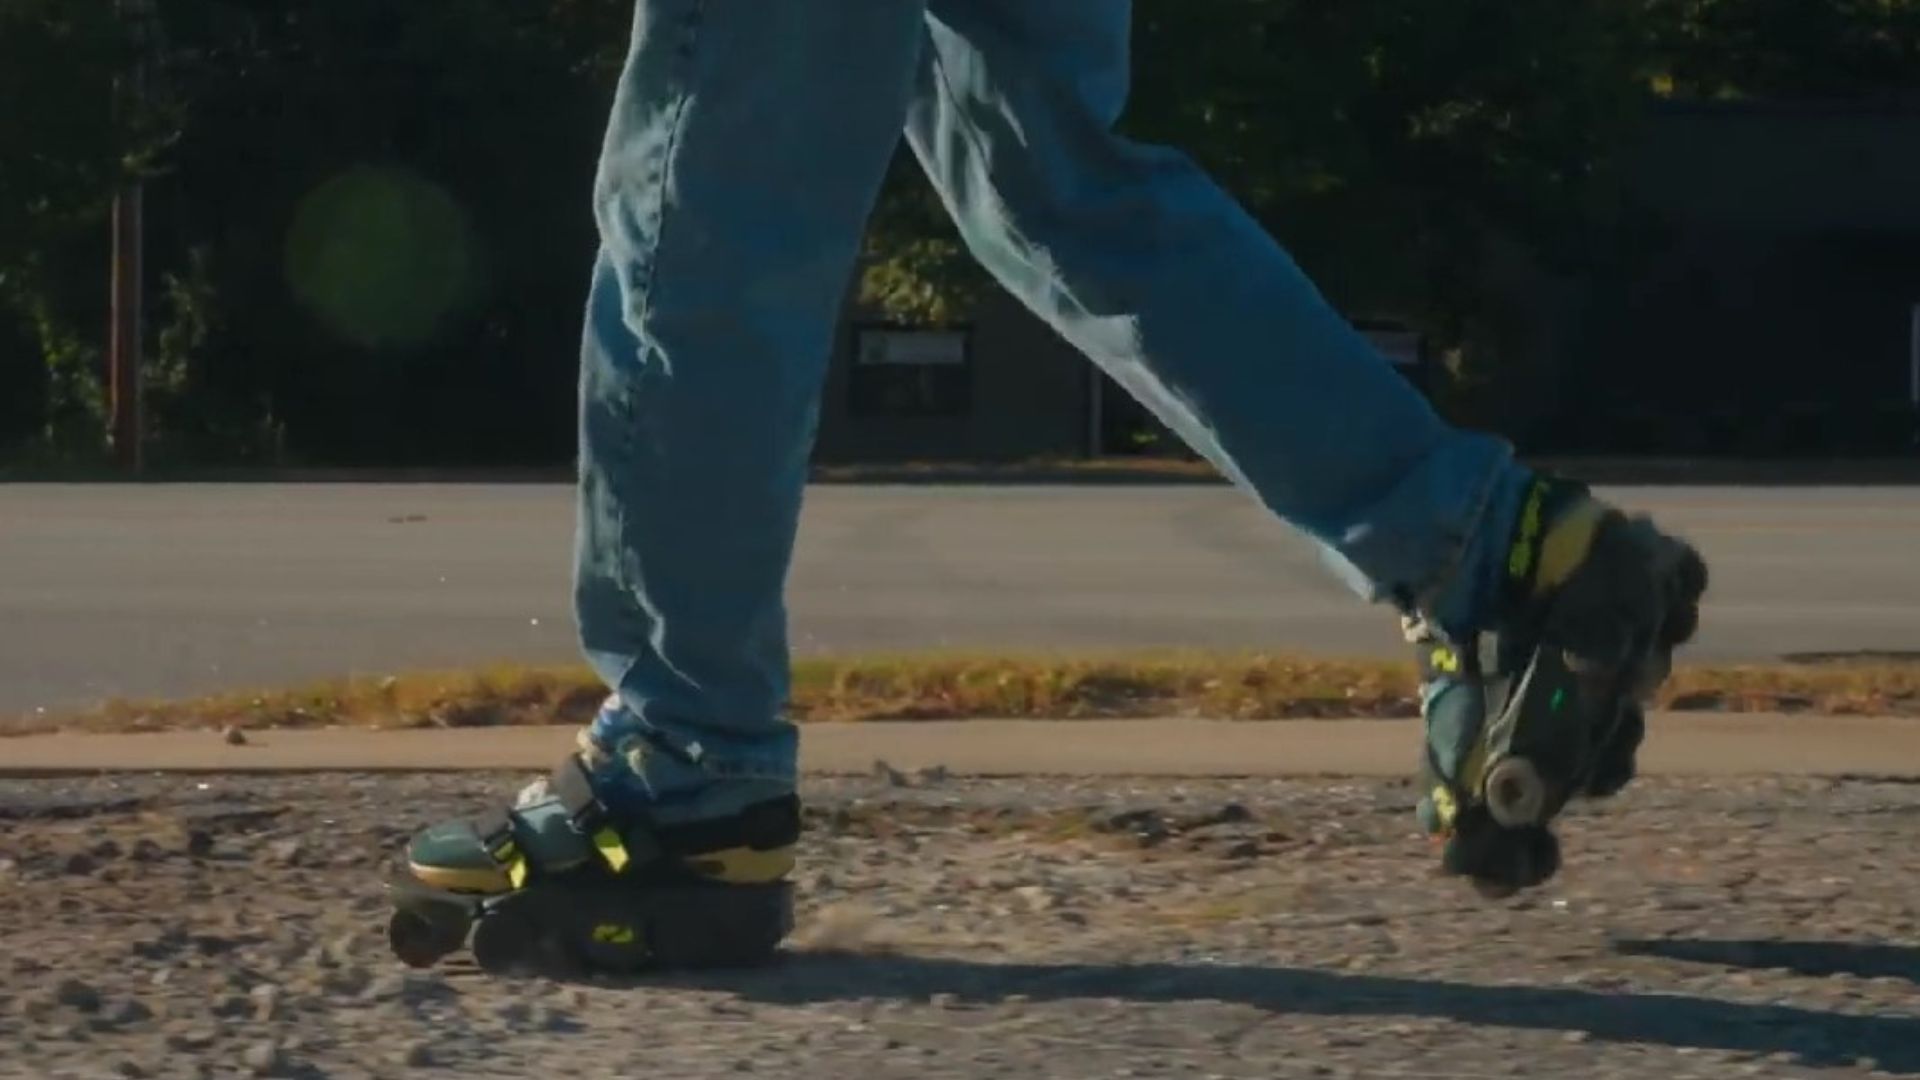 La solución para los afanados, crean zapatillas para caminar el doble de rápido